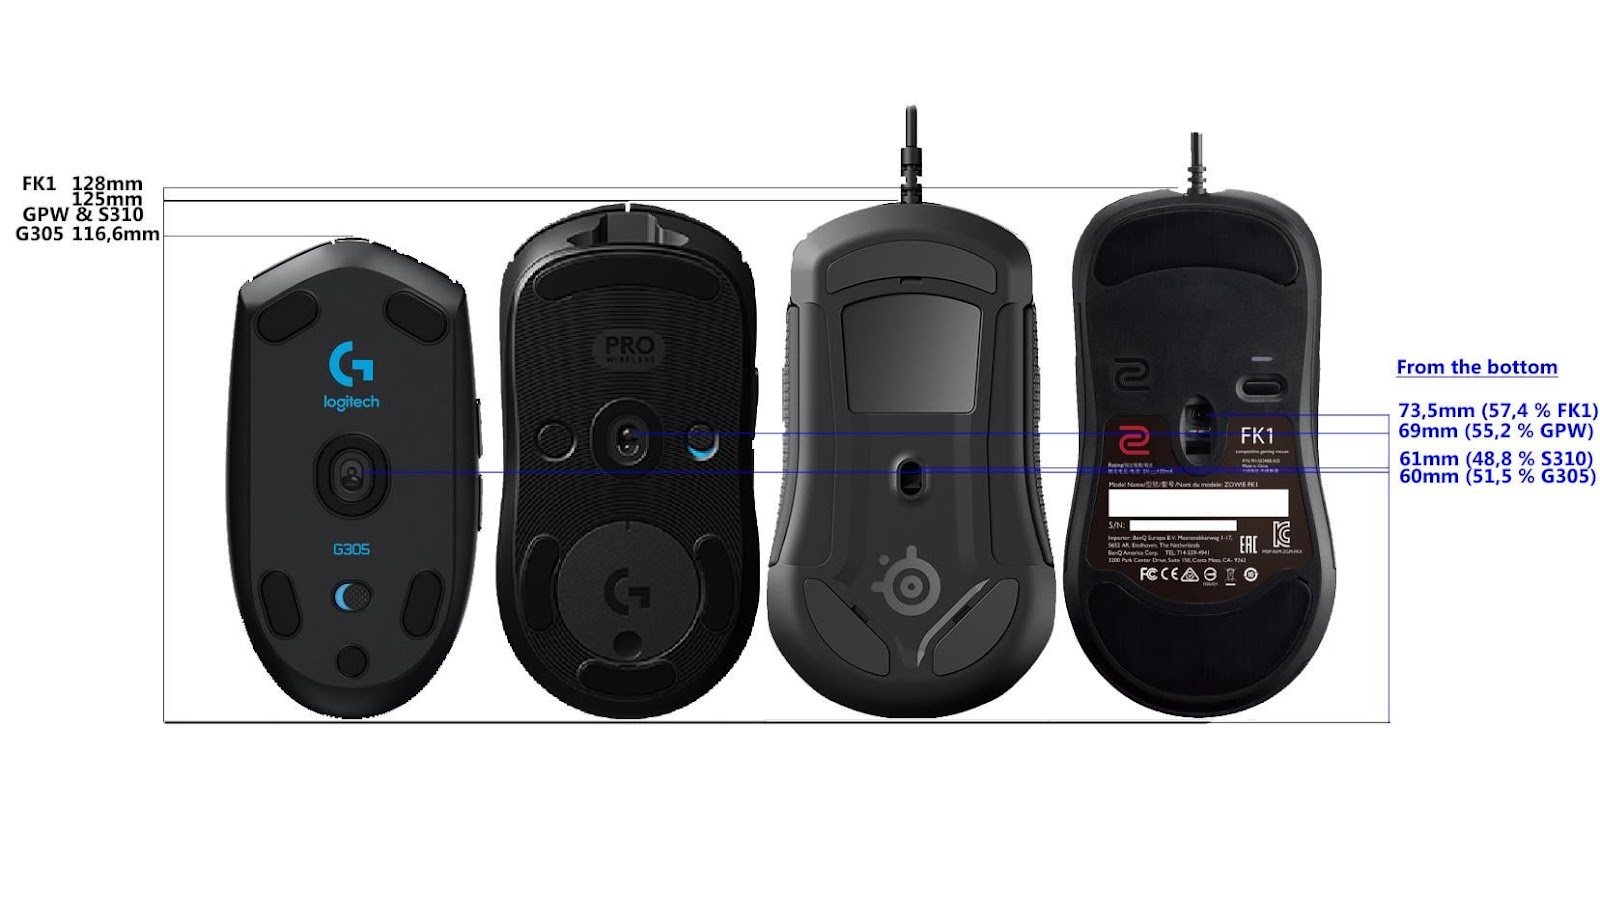 Mouse sensor position comparison : r/MouseReview